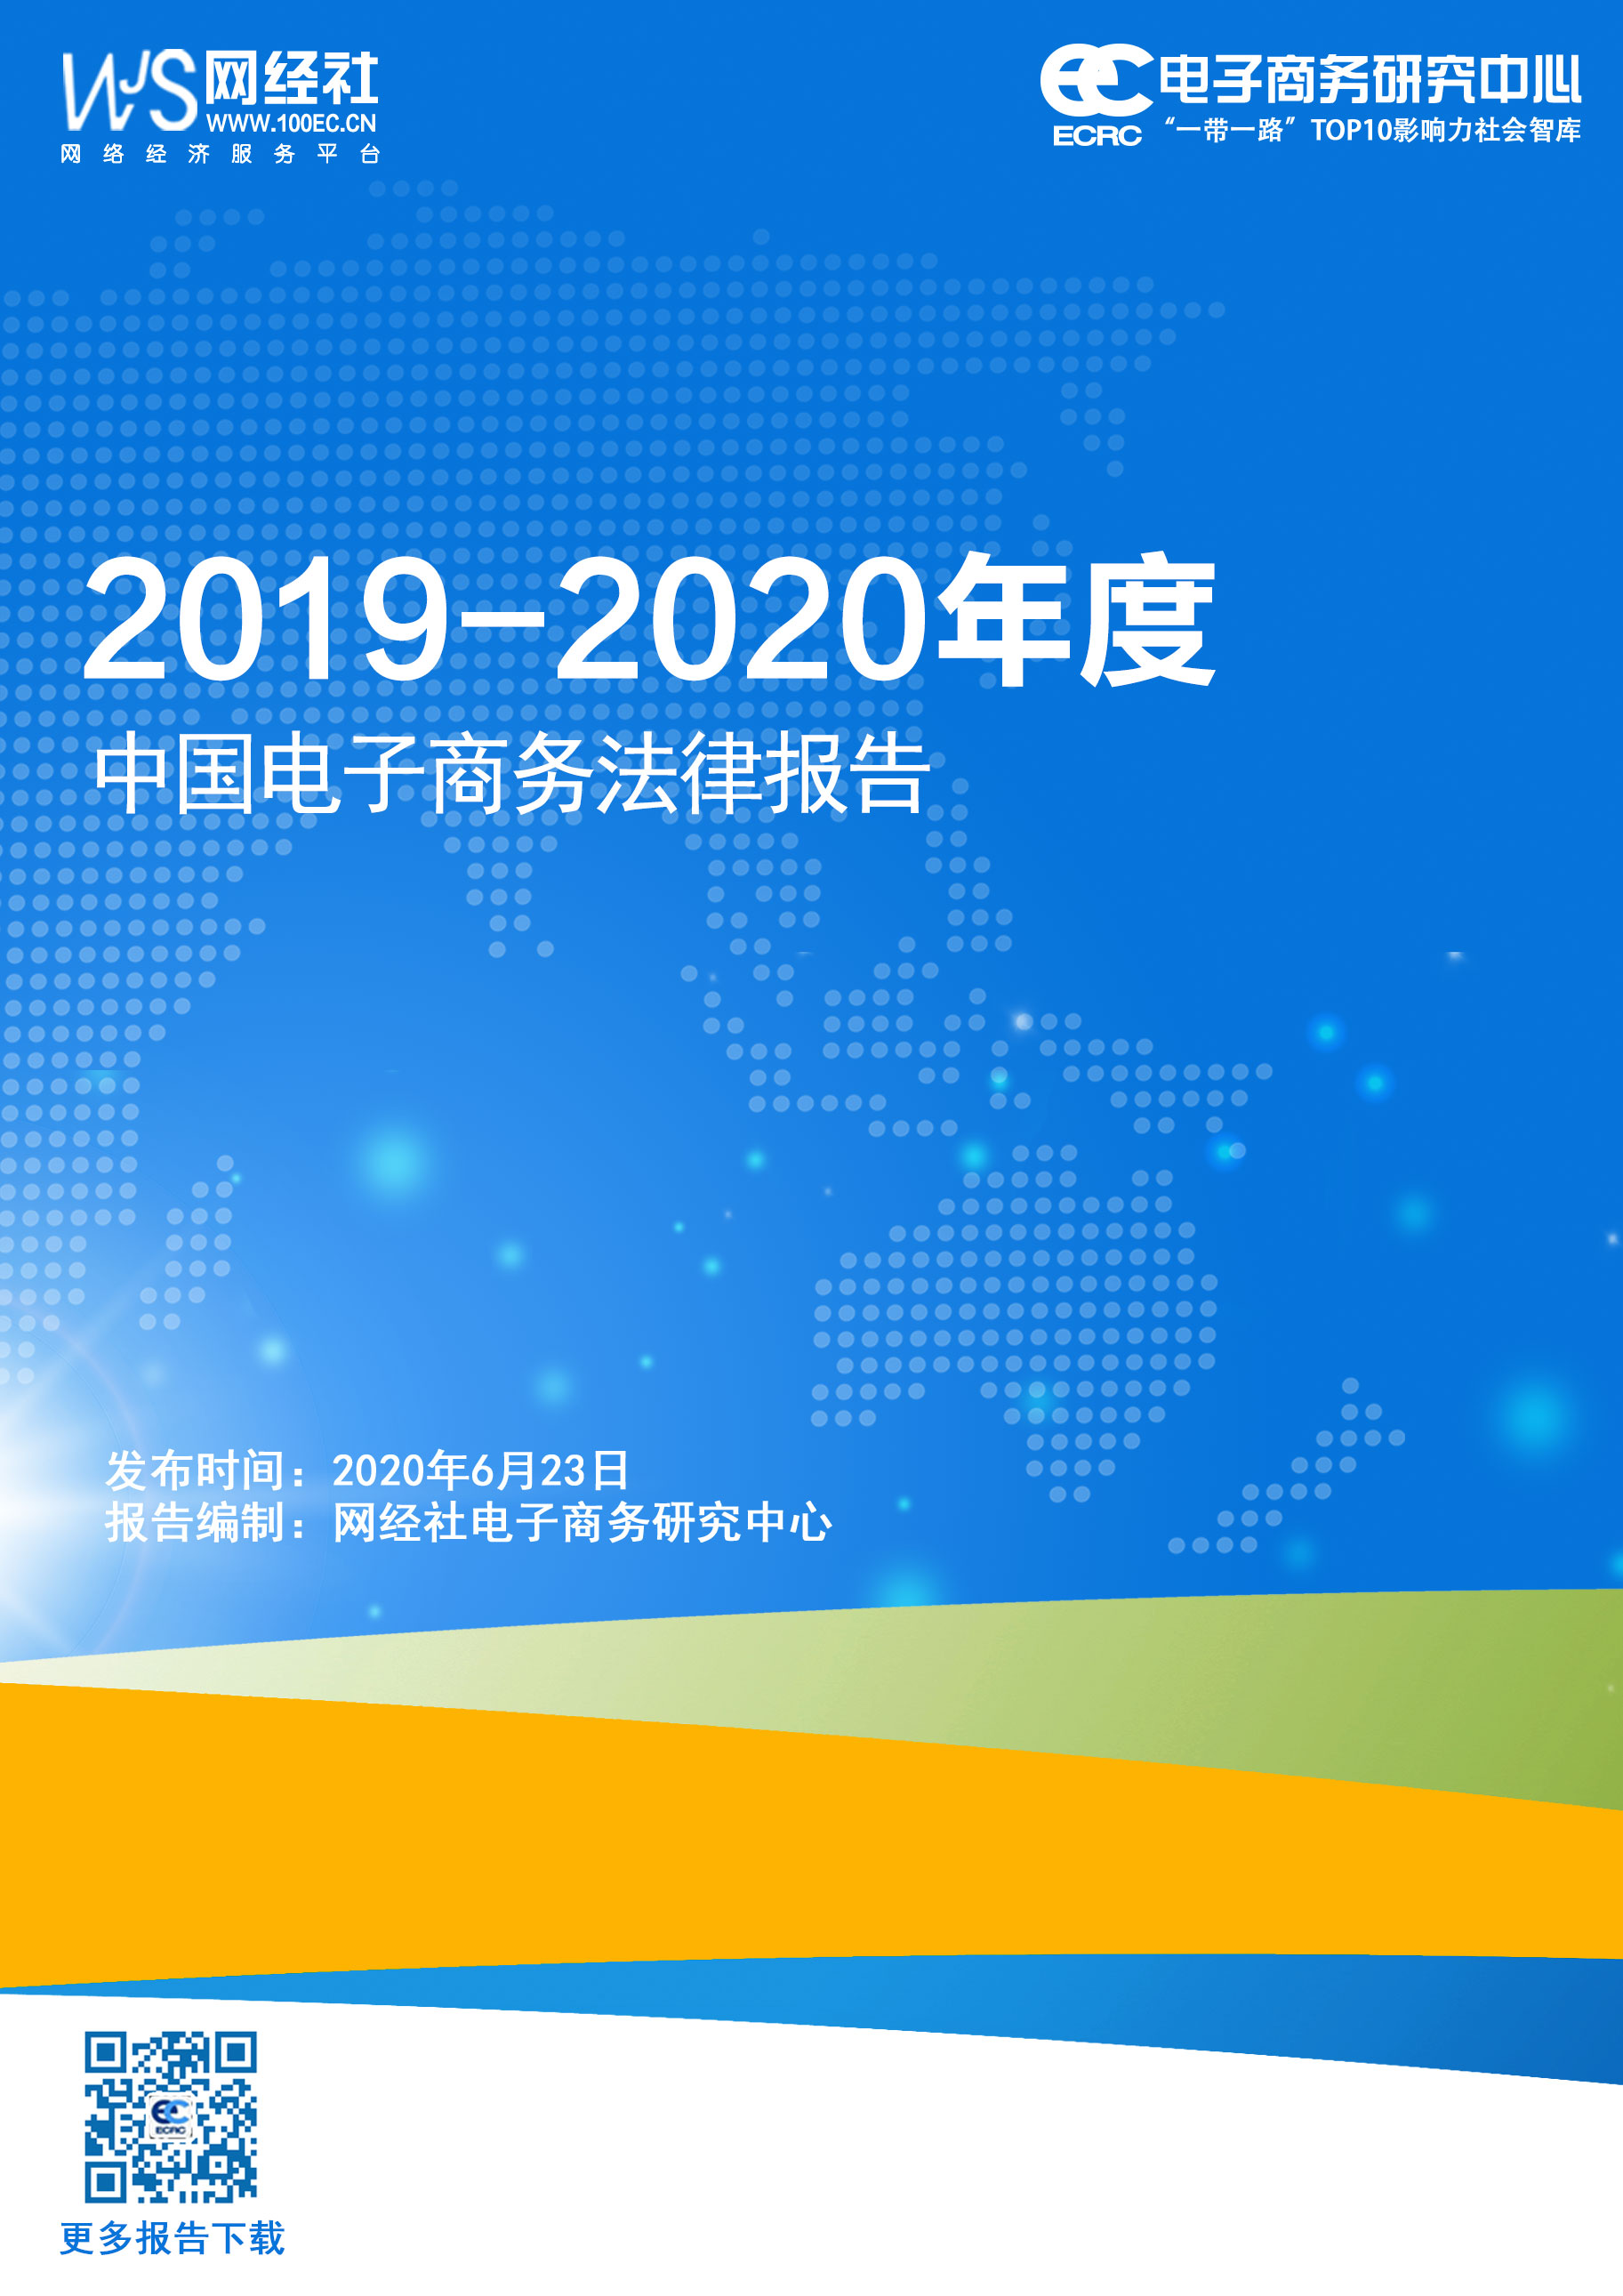 《2019-2020年度中国电子商务法律报告》(1).jpg